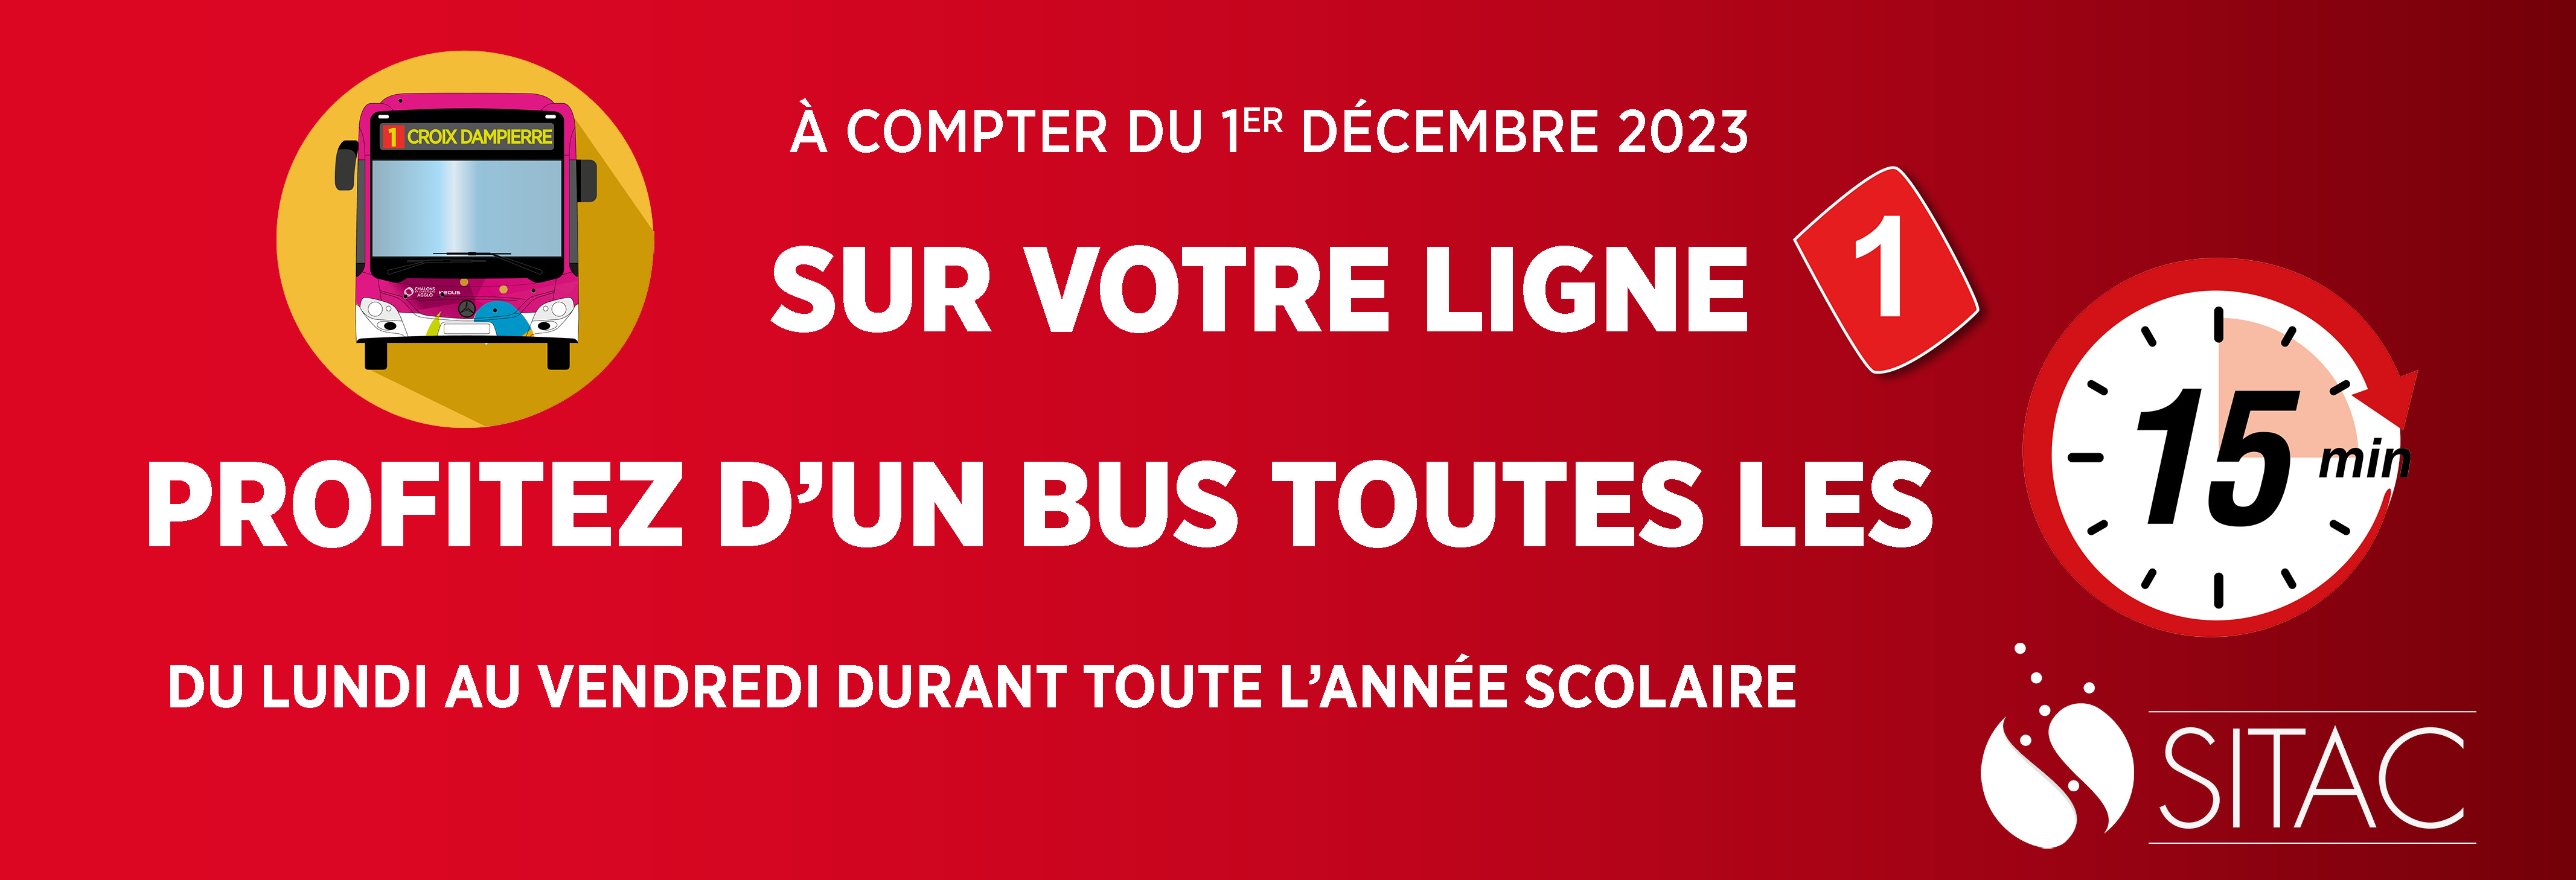 à compter du 1er décembre 2023, sur votre ligne 1 profitez d'un bus toutes les 15 min